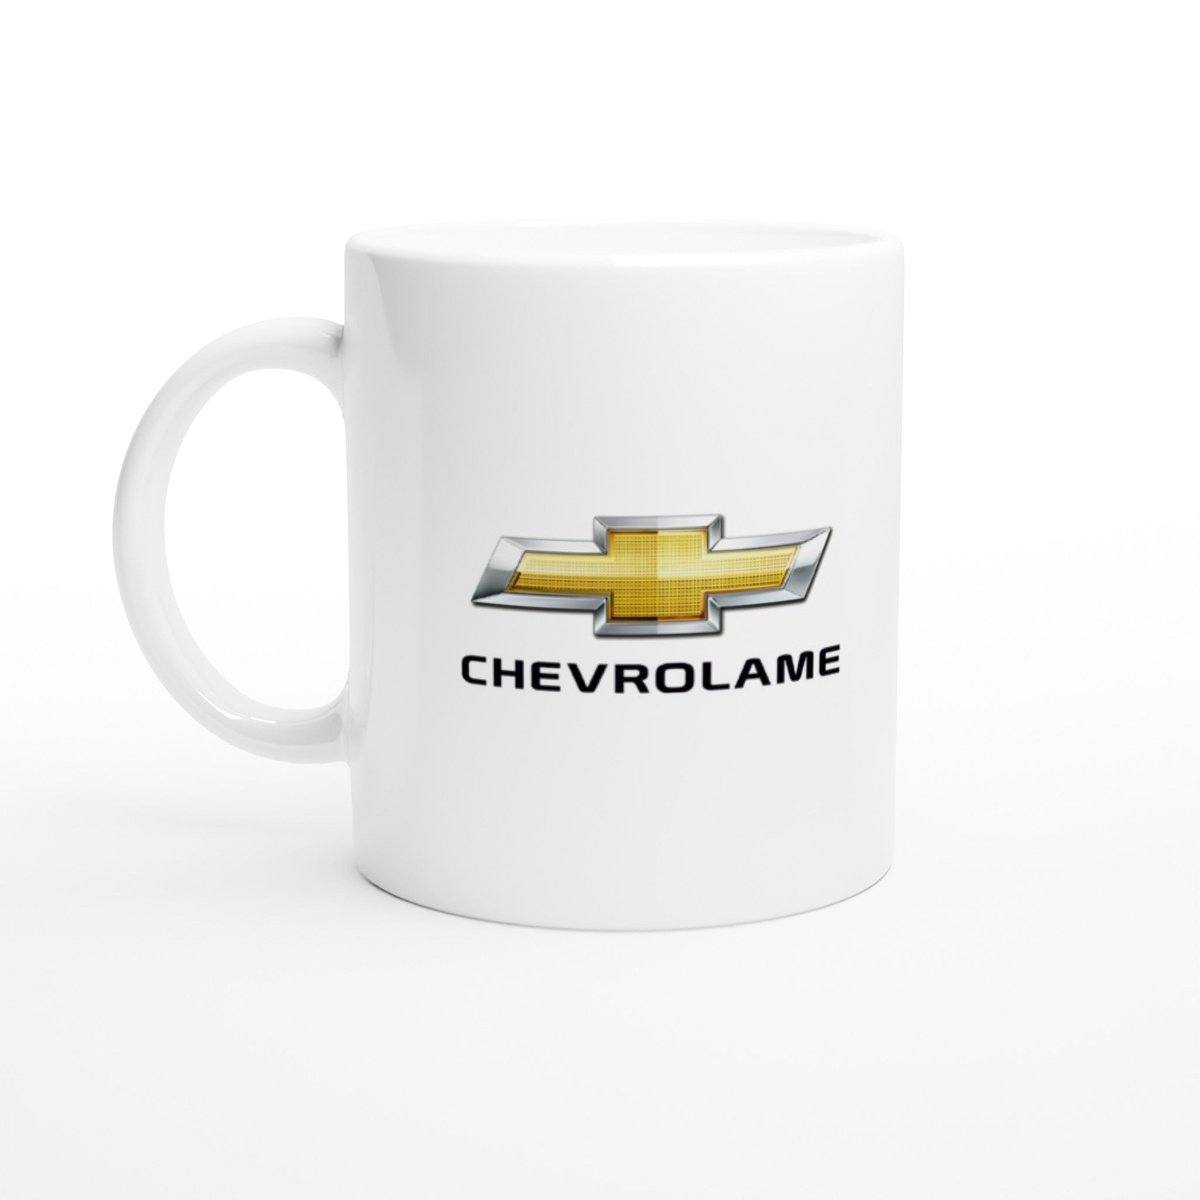 Chevrolame Mug Australia Online Color